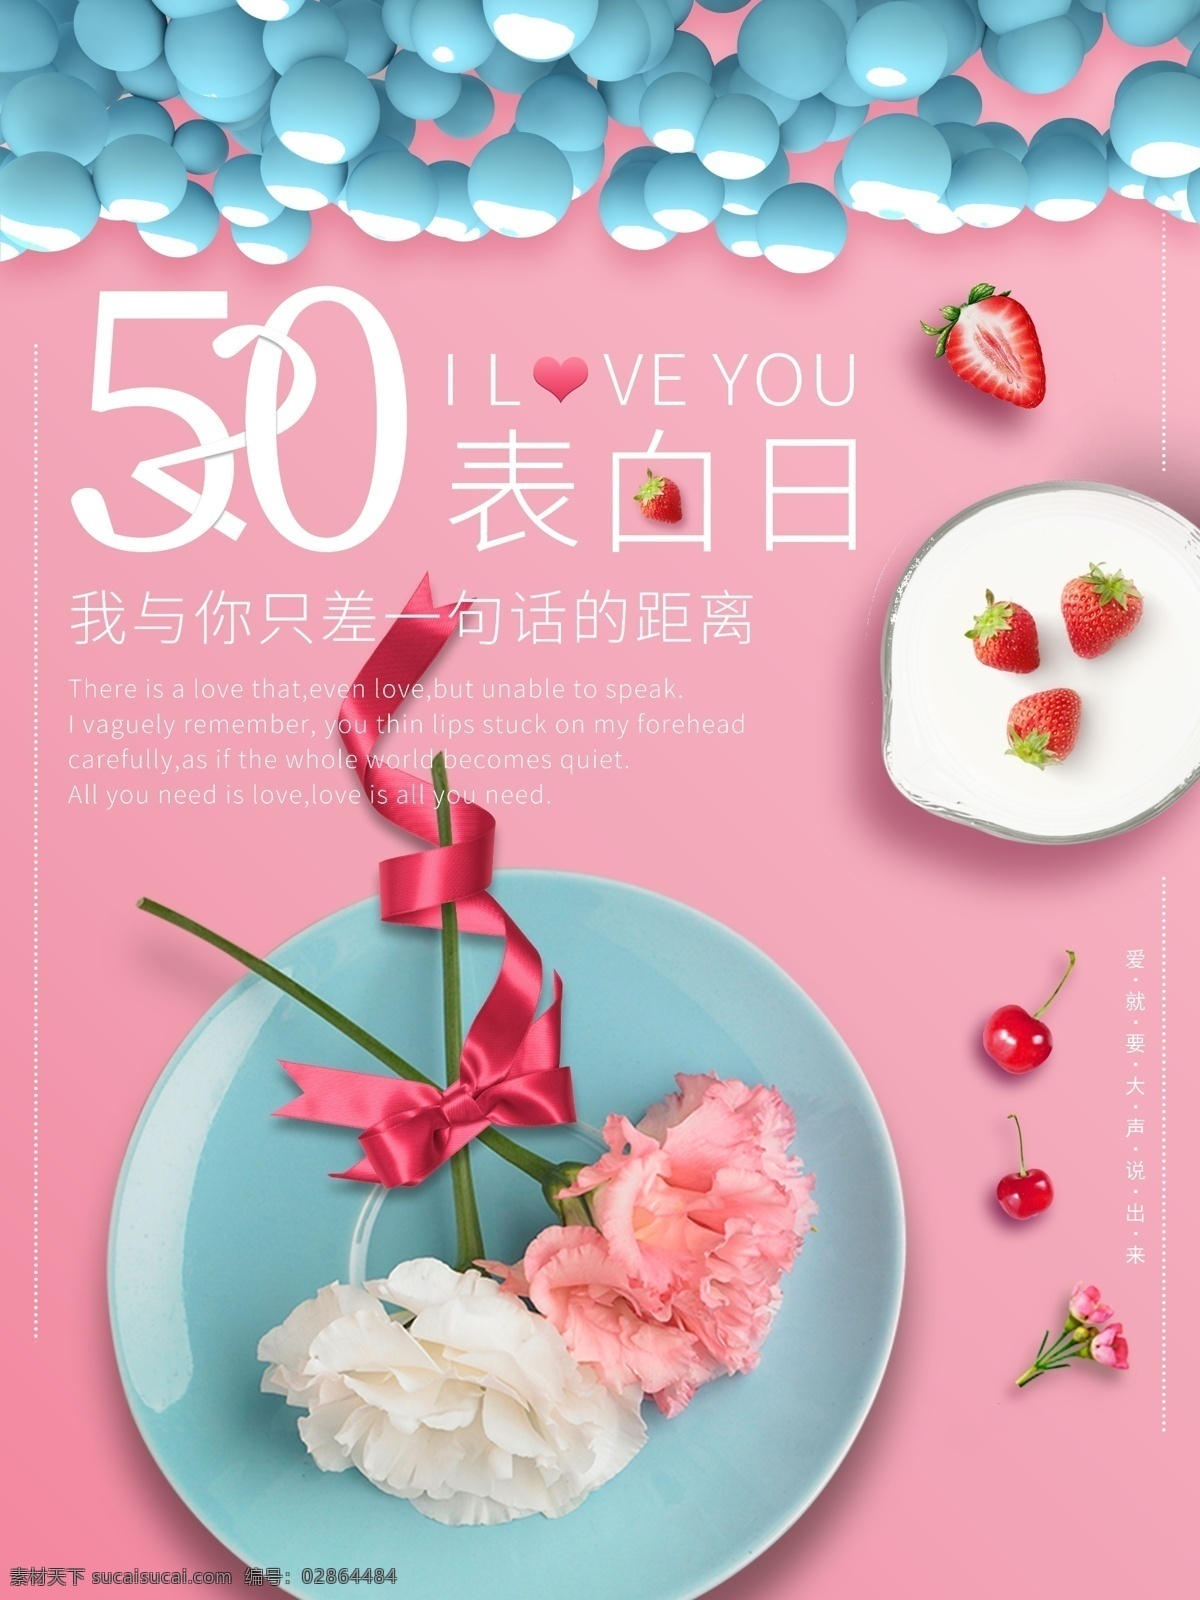 粉色 系 甜蜜 情人节 海报 520 马卡龙 草莓